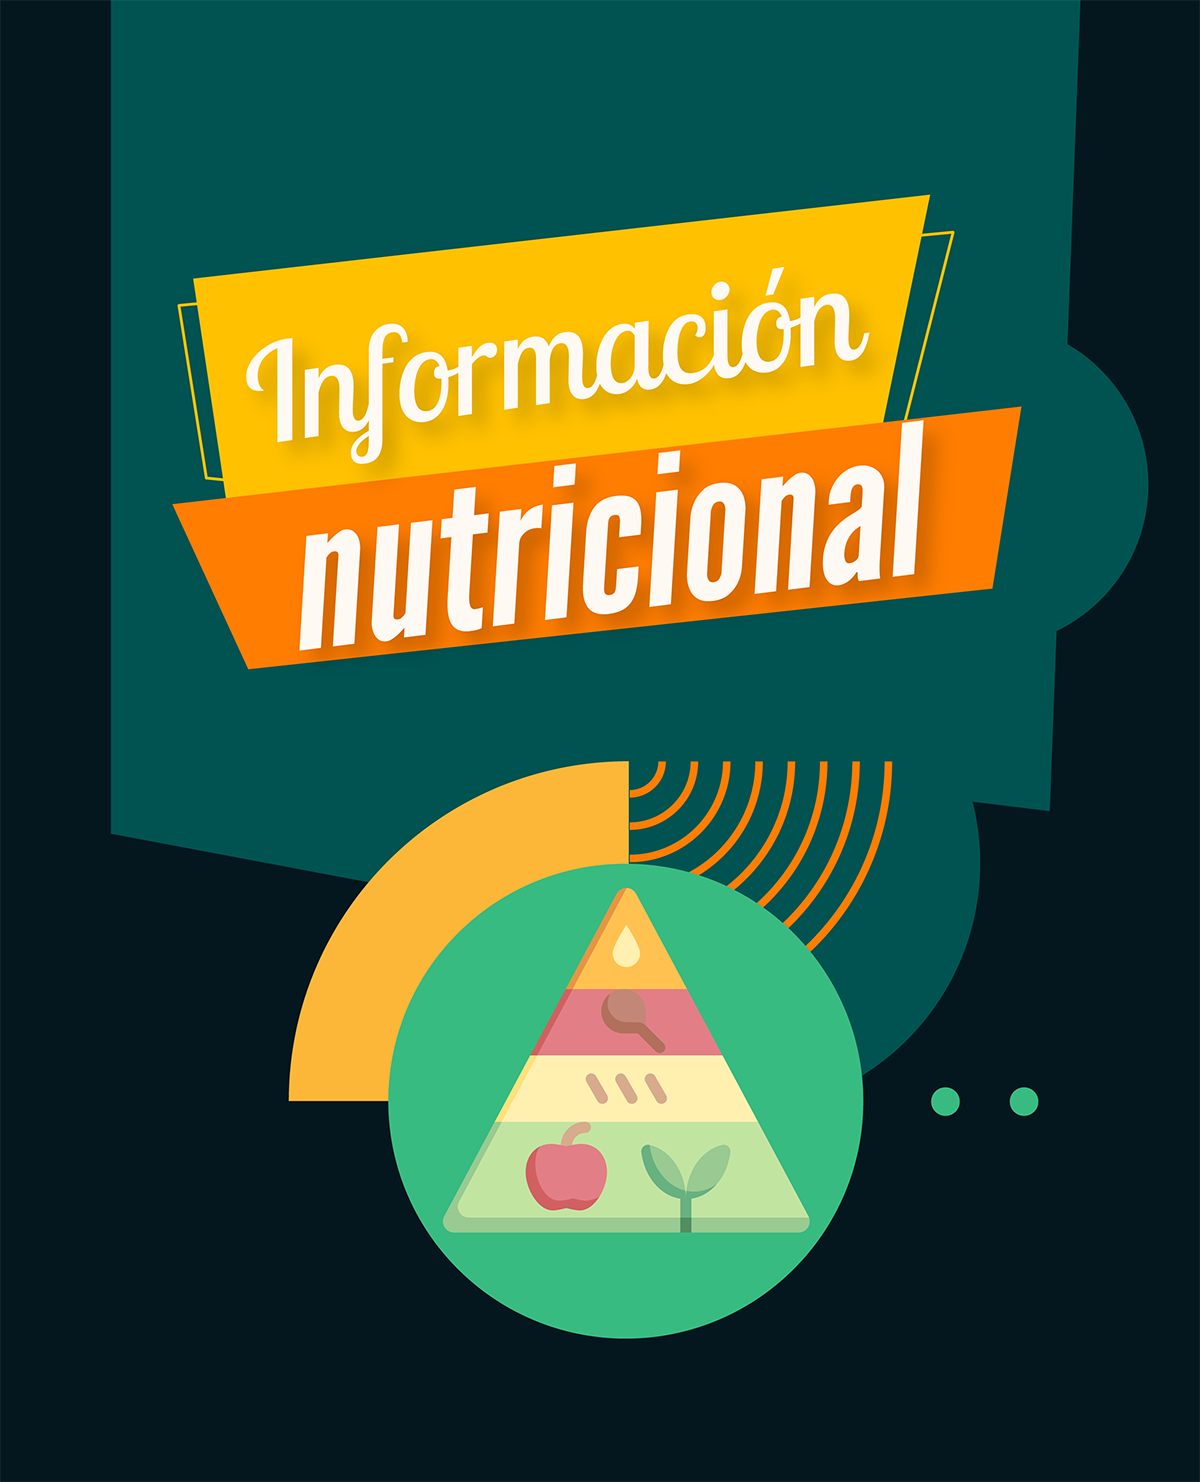 Información Nutricional